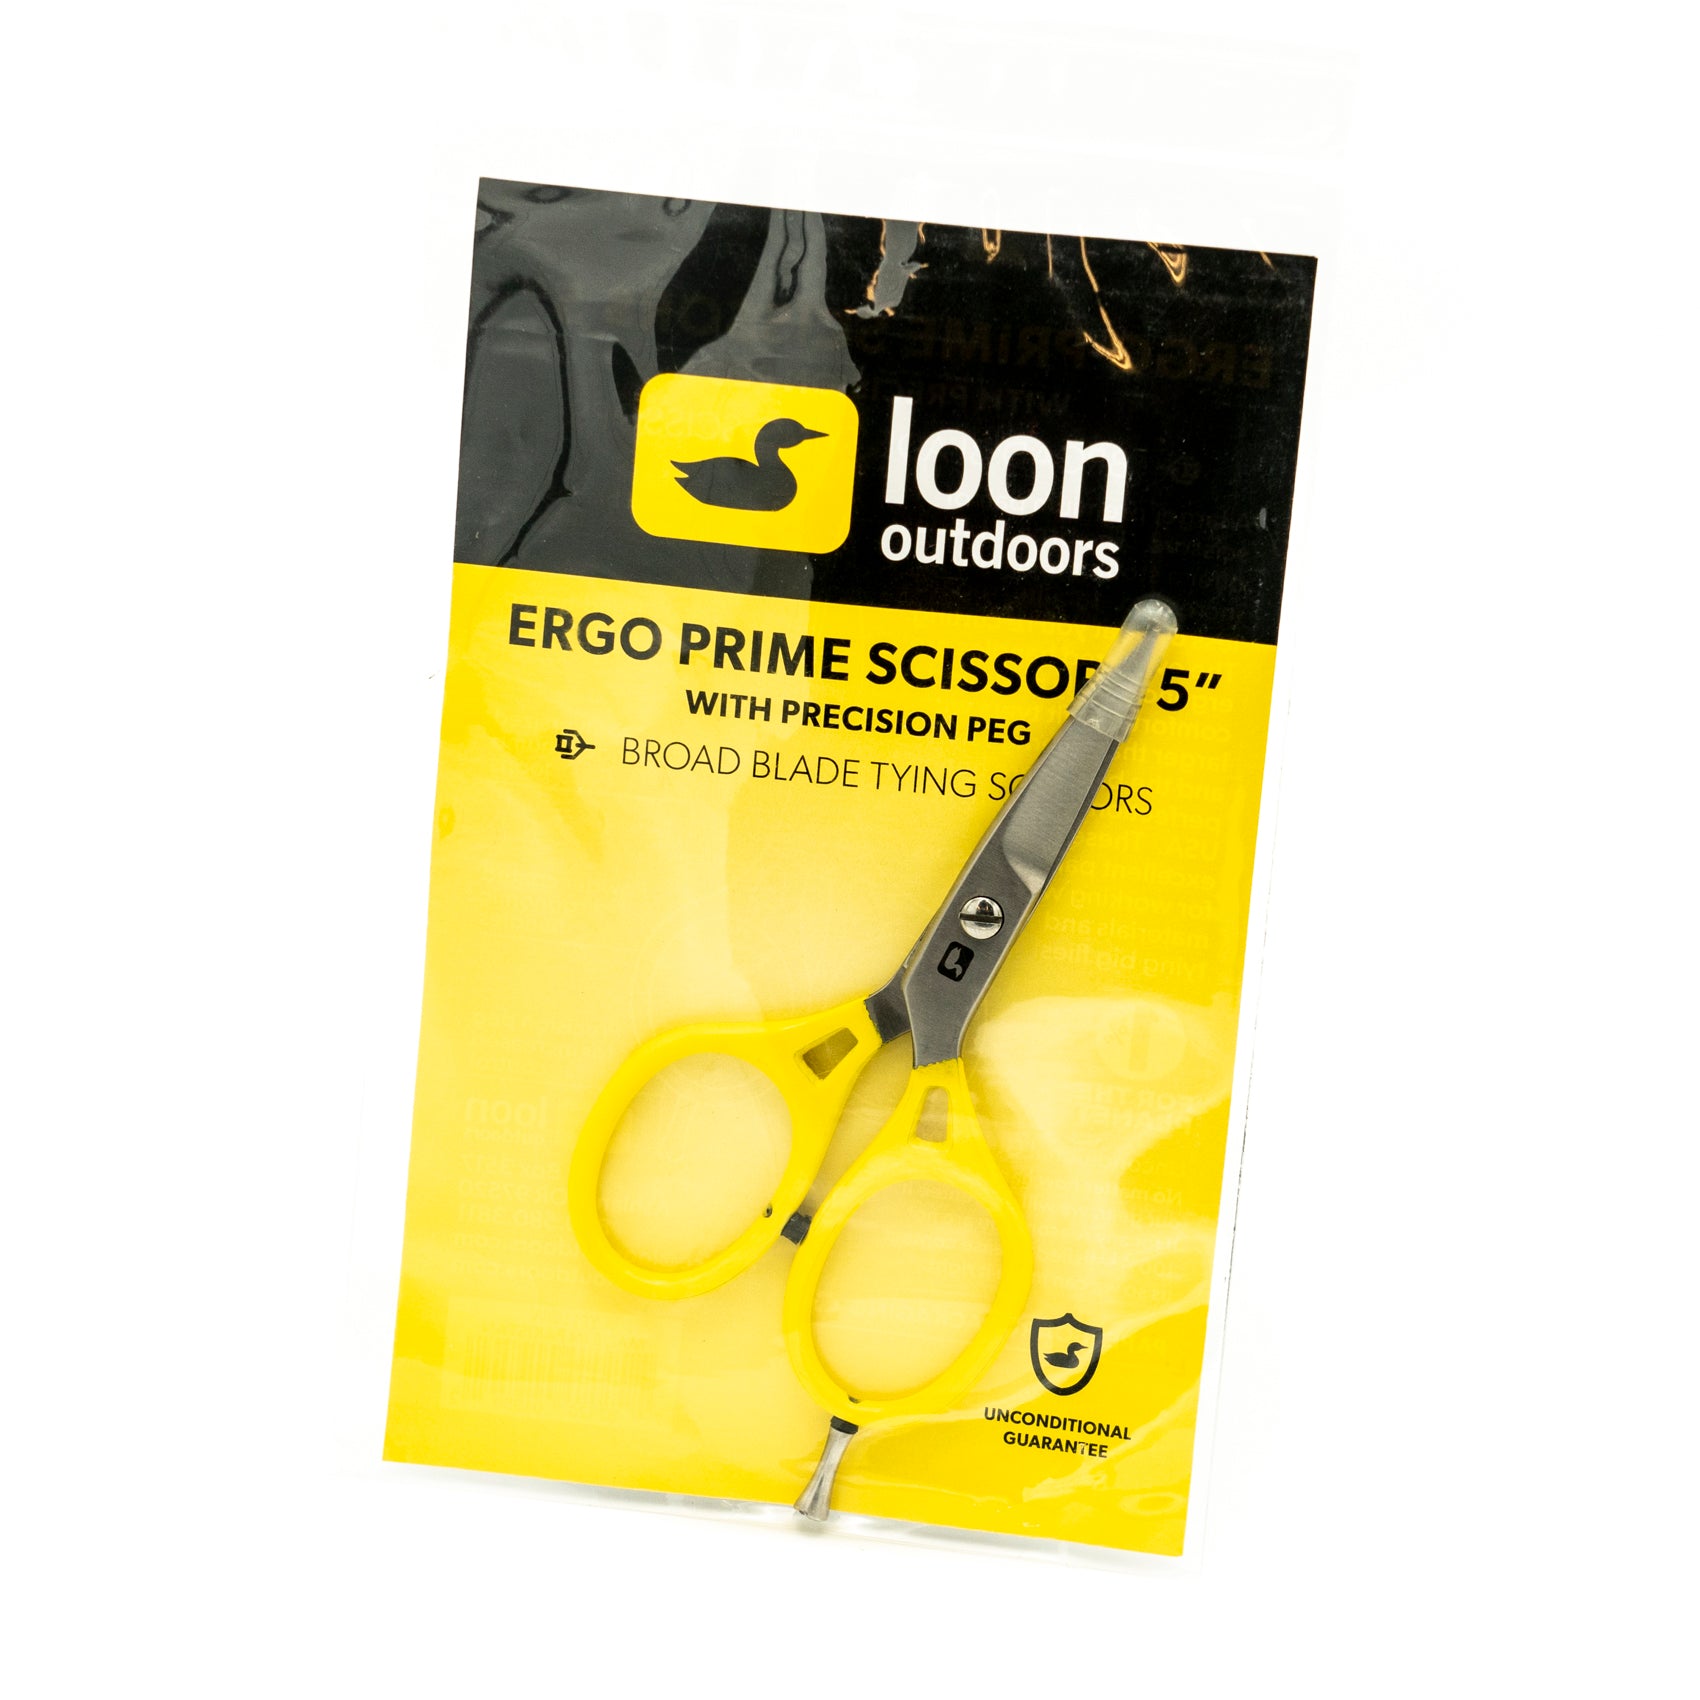 loon Ergo Prime Scissors 5"